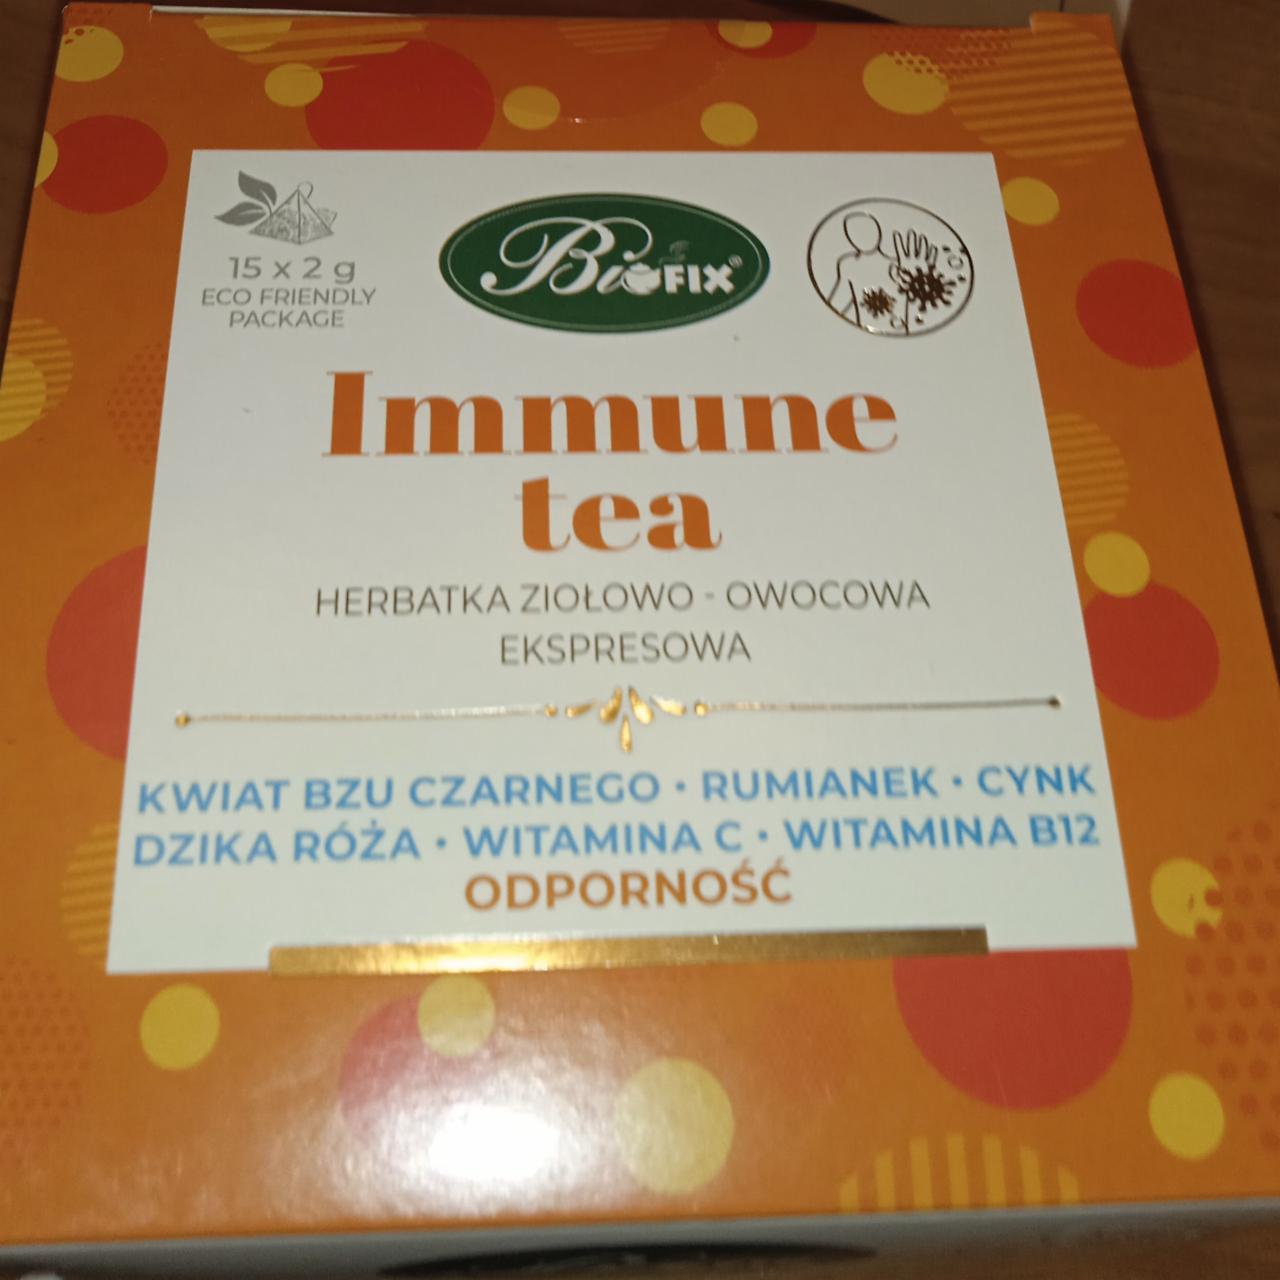 Zdjęcia - Immune tea Biofix